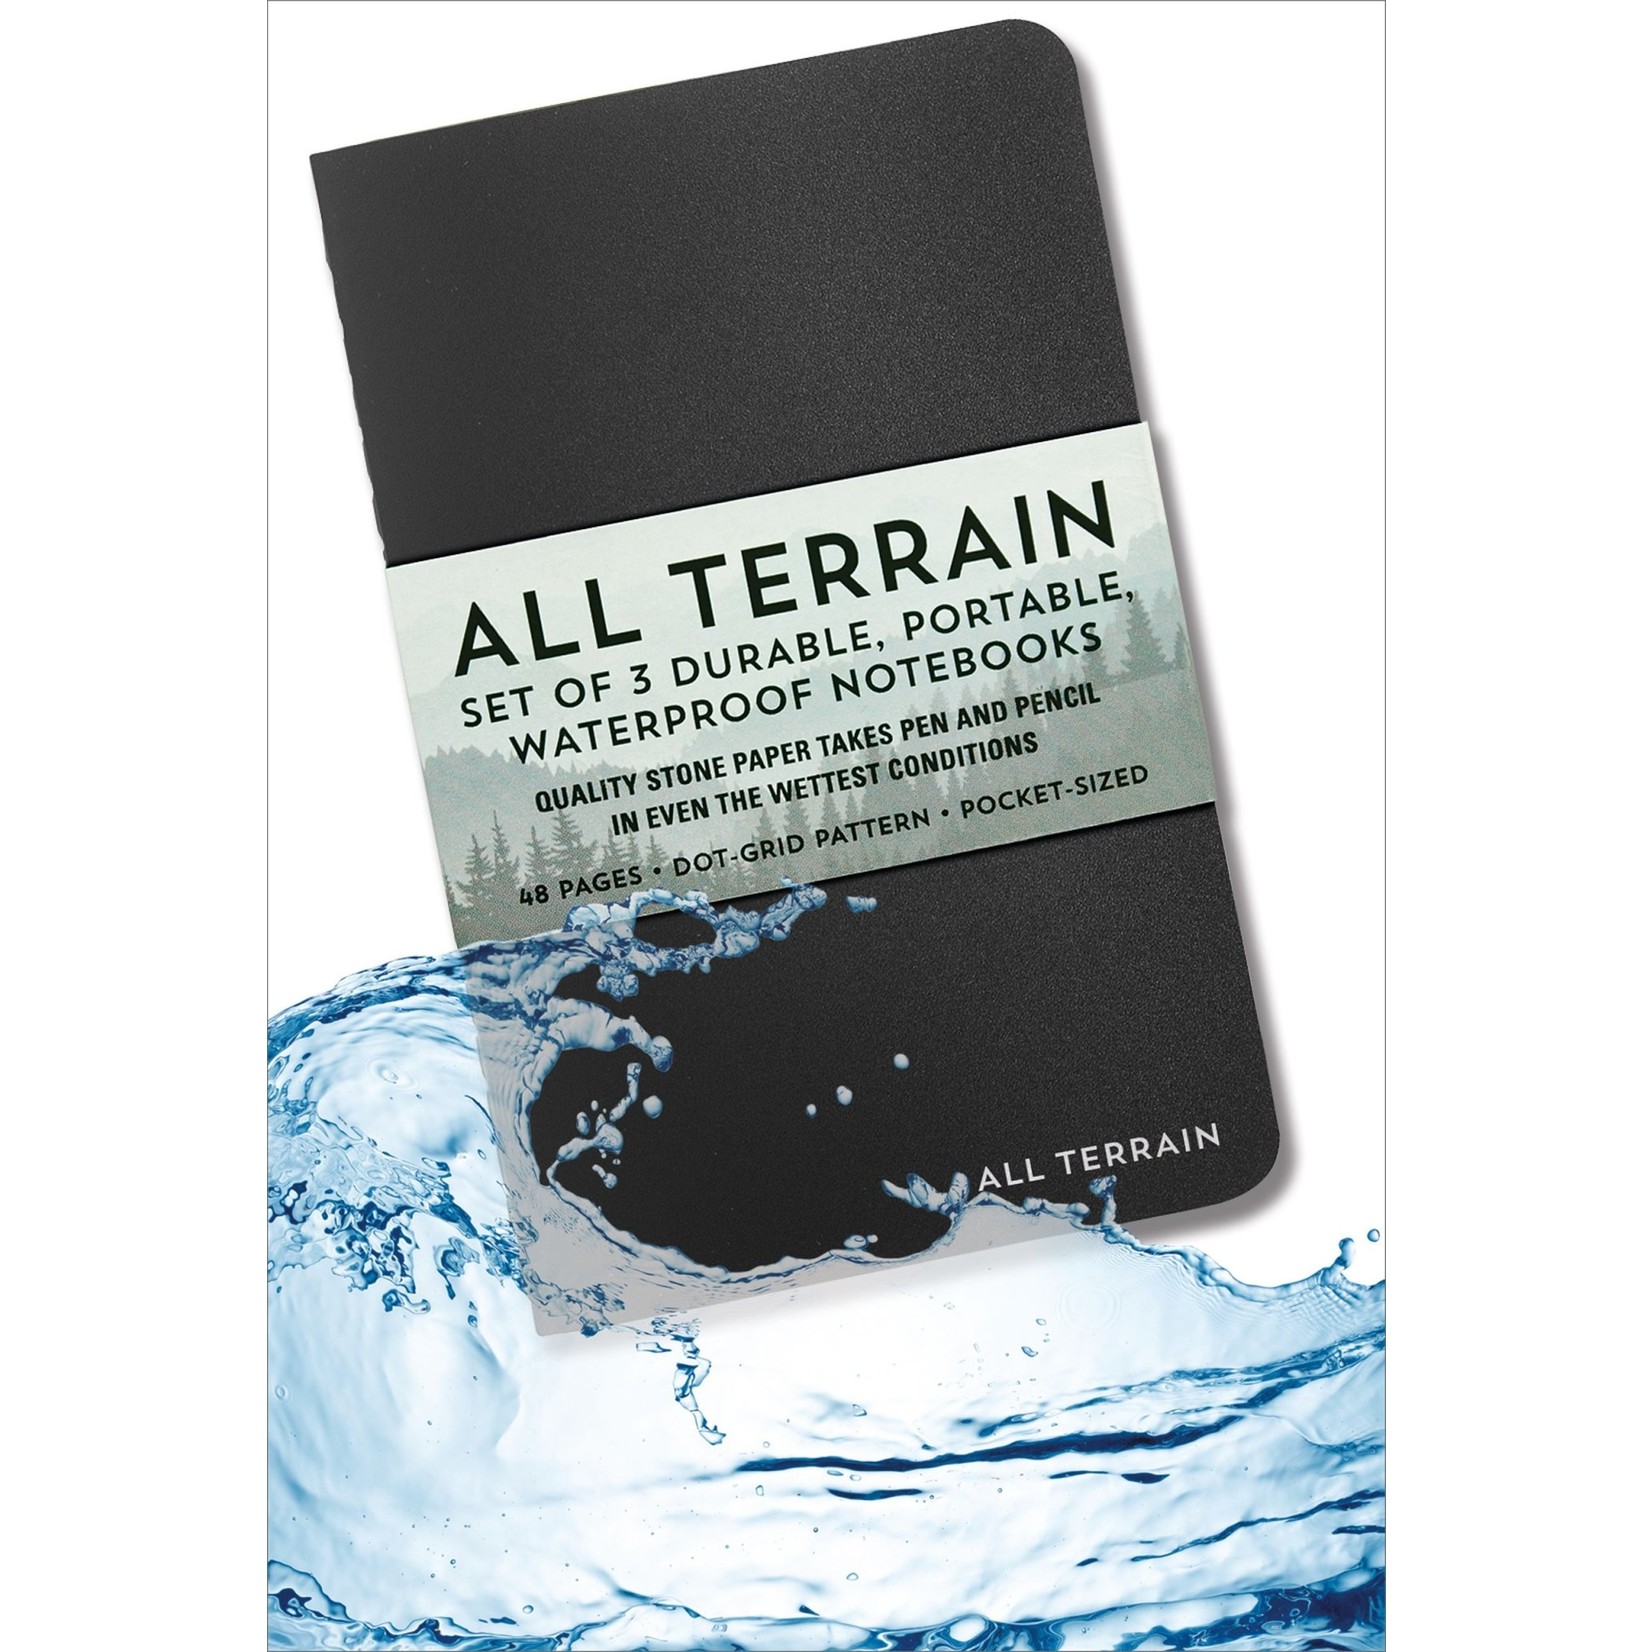 All Terrain Waterproof Notebooks (set of 3) (Dot Grid Pattern)